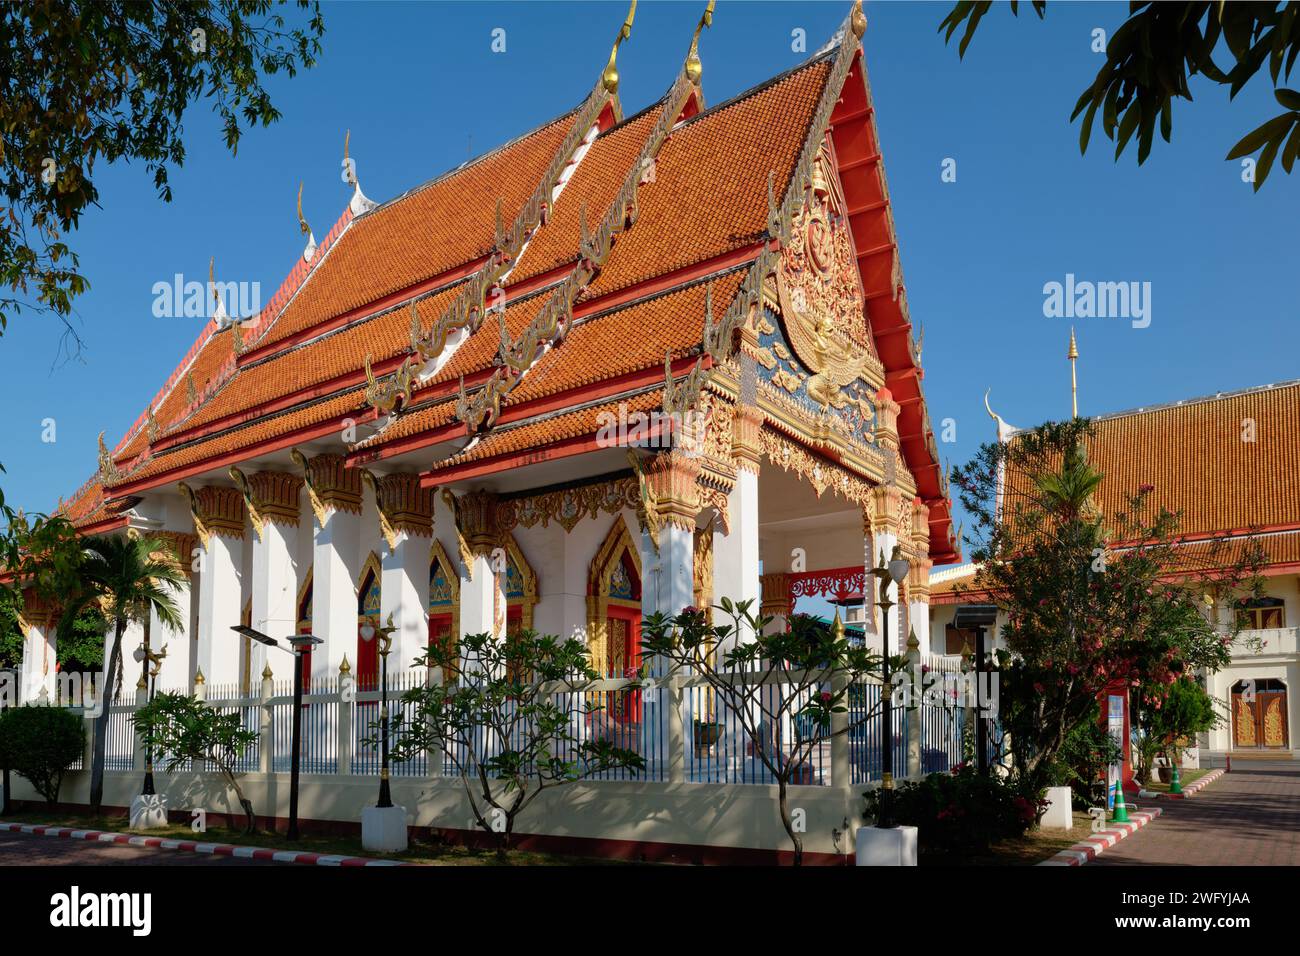 Der Viharn (Vihara) oder die Gebets-/Meditationshalle eines typischen buddhistischen Tempels im thailändischen Stil, Wat Mongkol Nimit (Mongkhon Nimit) in Phuket Stadt, Thailand Stockfoto